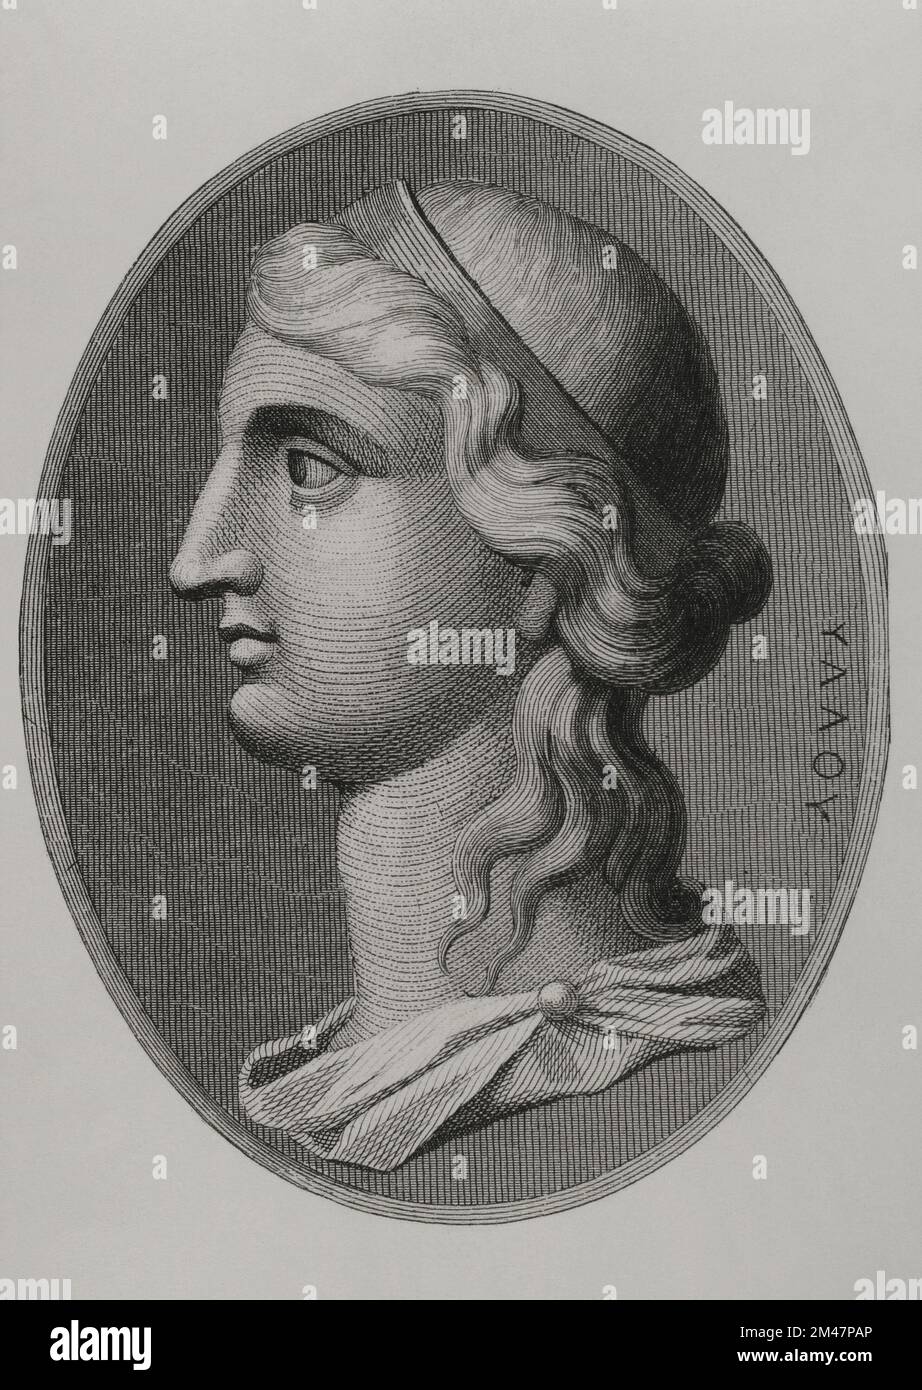 Cleopatra VII Philopator (69 BC - 30 BC). Last queen of Egypt of the Lagid dynasty (51 BC - 30 BC). Portrait. Engraving. "Los Héroes y las Grandezas de la Tierra". Volume I. 1854. Stock Photo